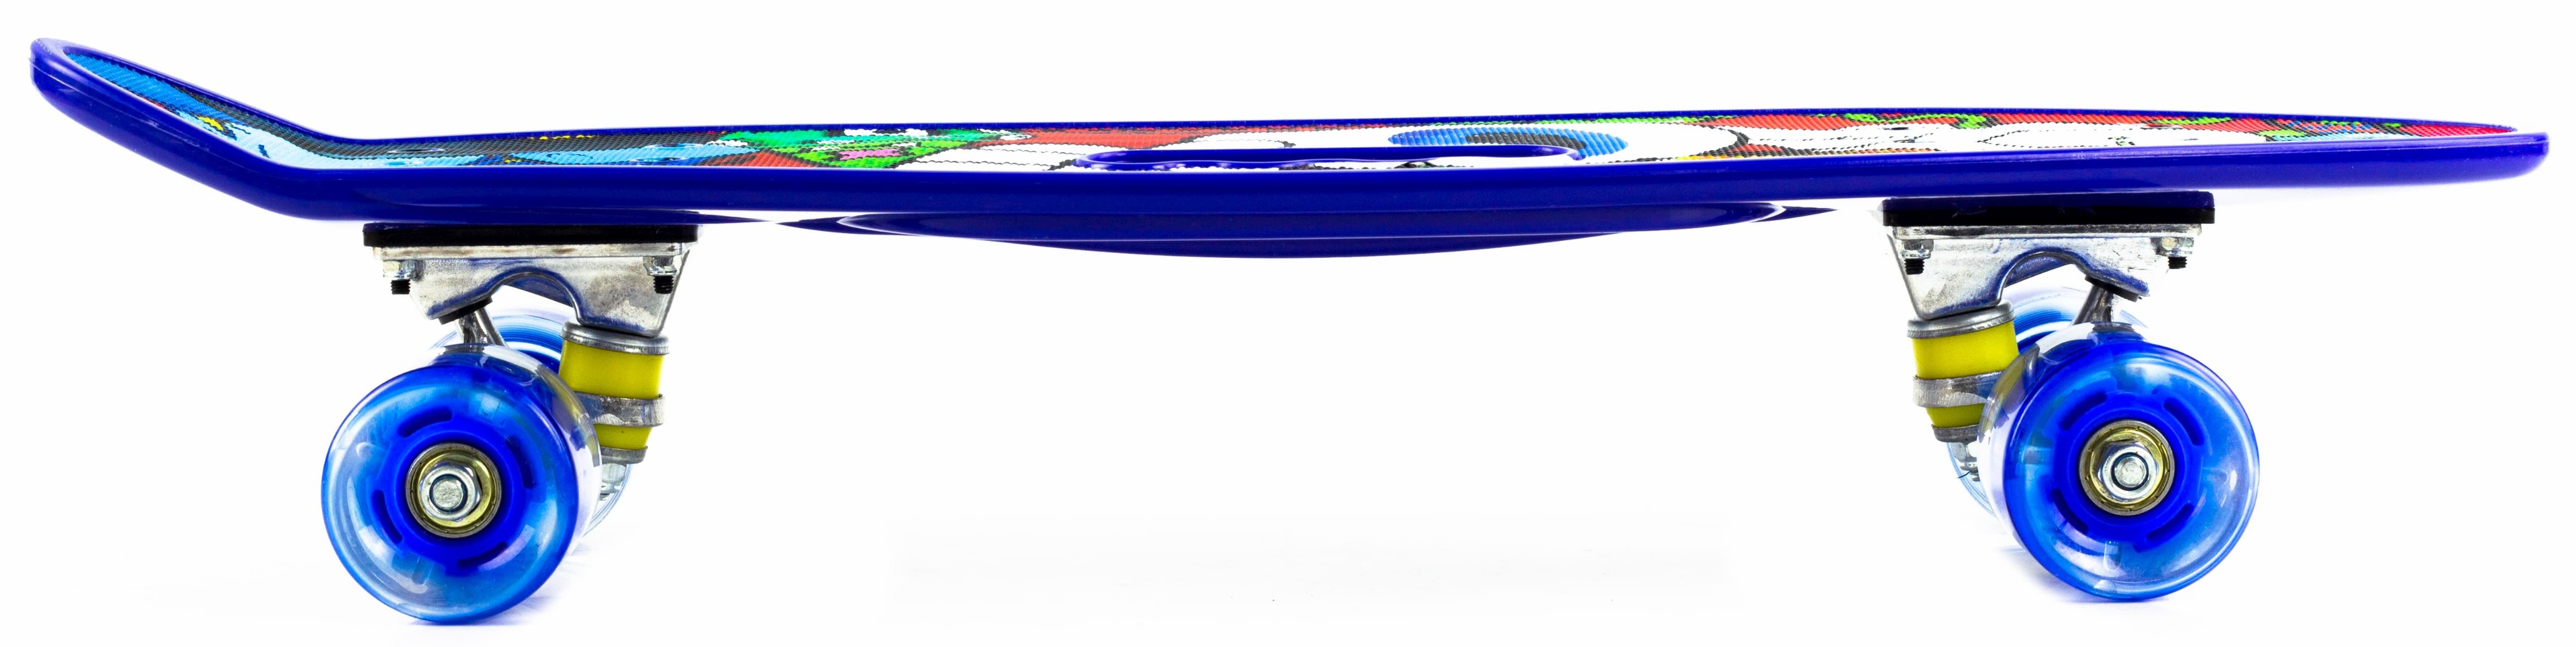 Пенни Борд со светящимися колесами и ручкой для переноски, 60 см. 00524 / Микс